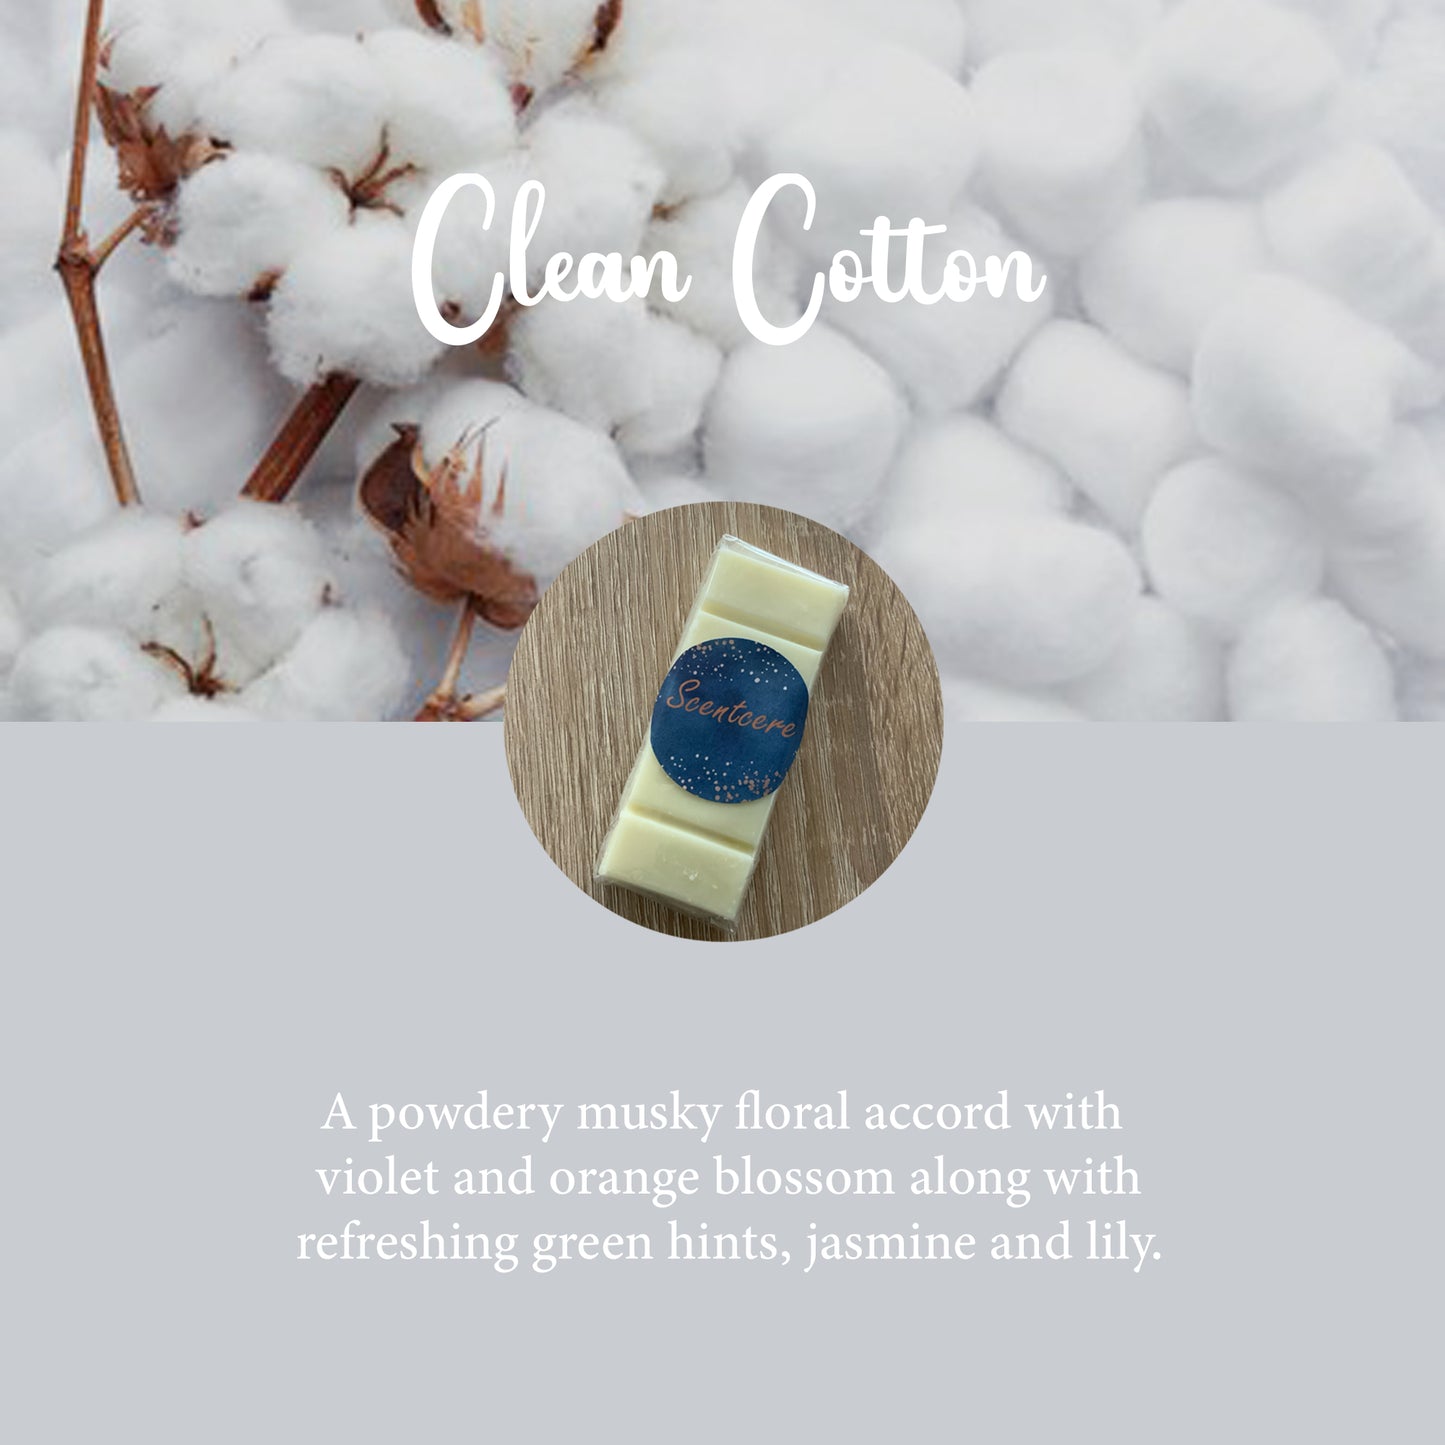 Clean cotton